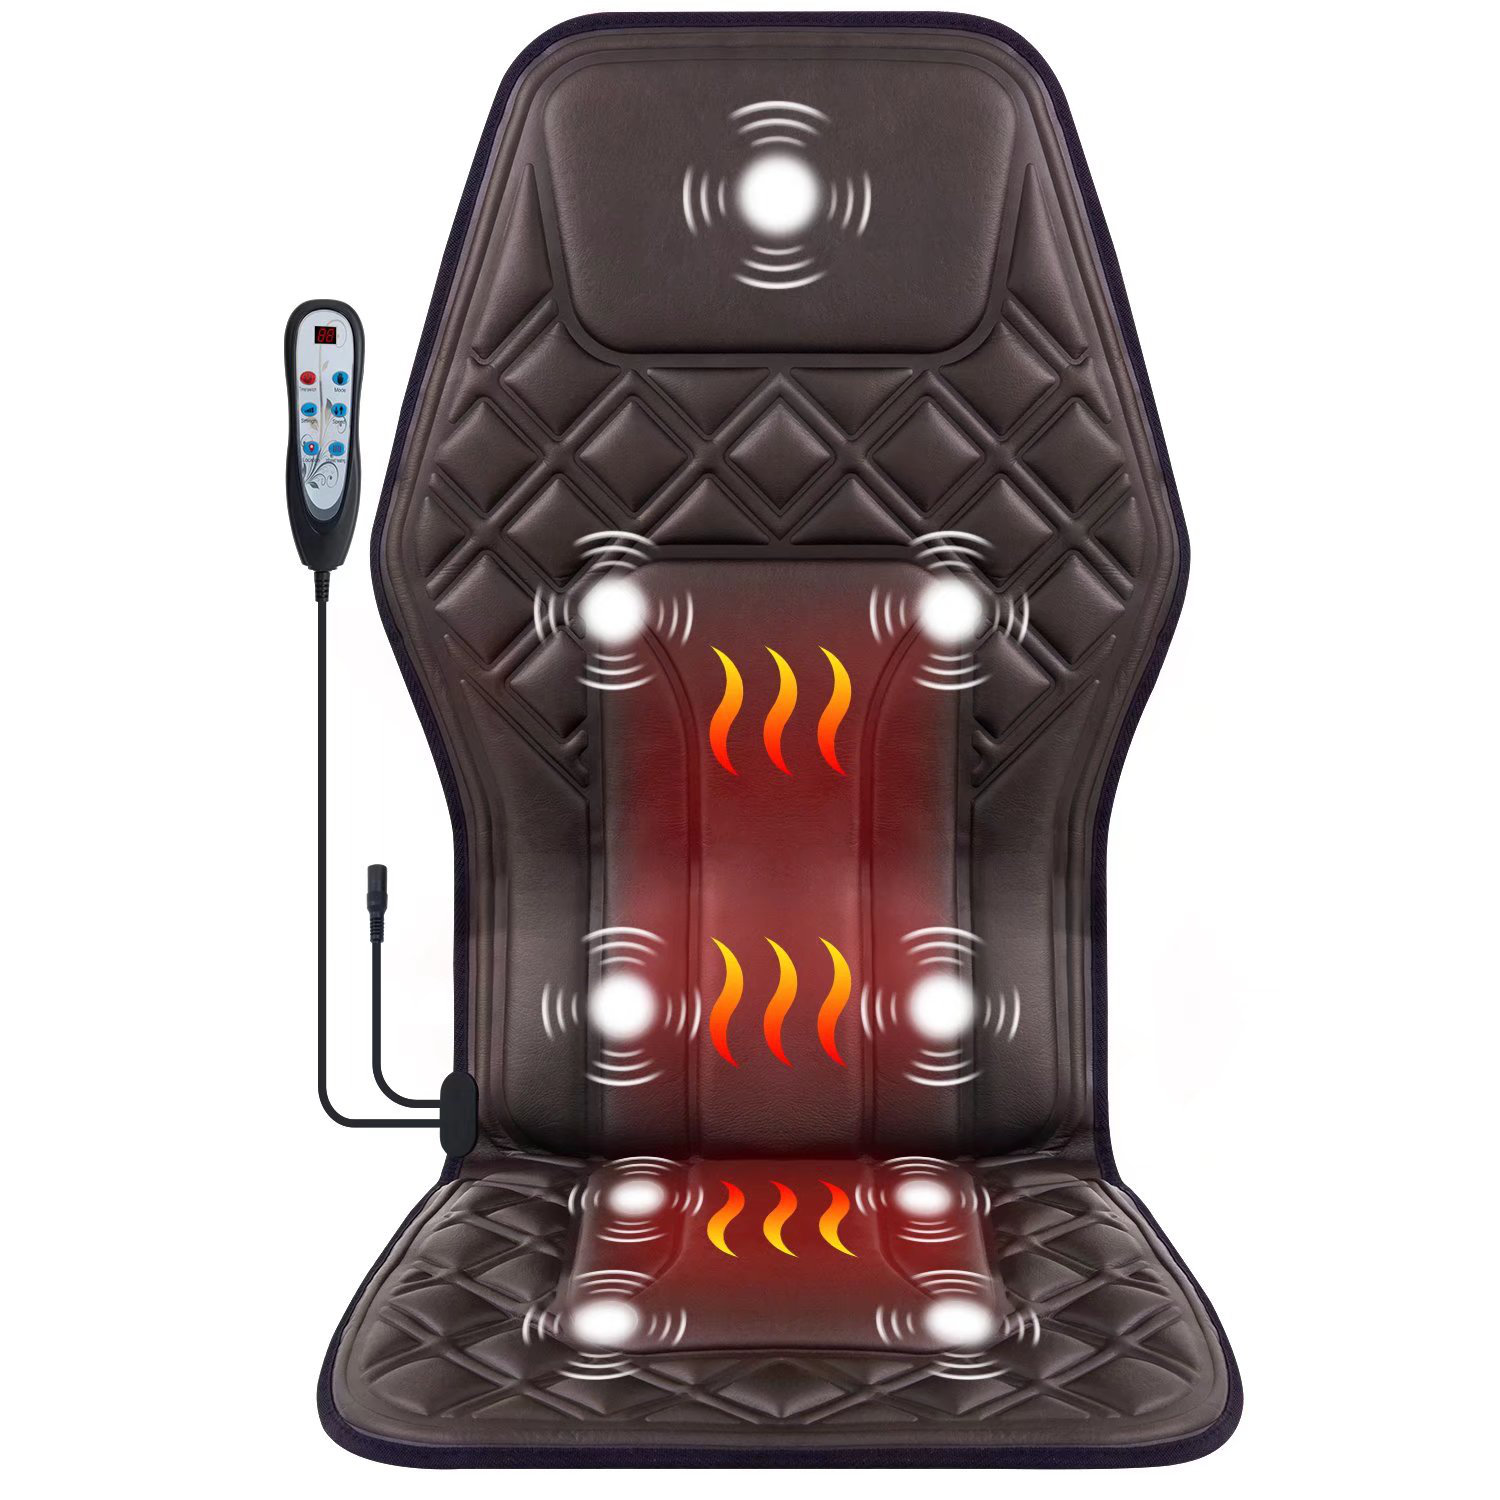 https://assets.wfcdn.com/im/99151385/compr-r85/2321/232173830/kenyarda-vibration-back-massager-with-heat-massage-chair-pad9-vibration-massage-nodes-2-heat-levels-chair-seat-massager.jpg